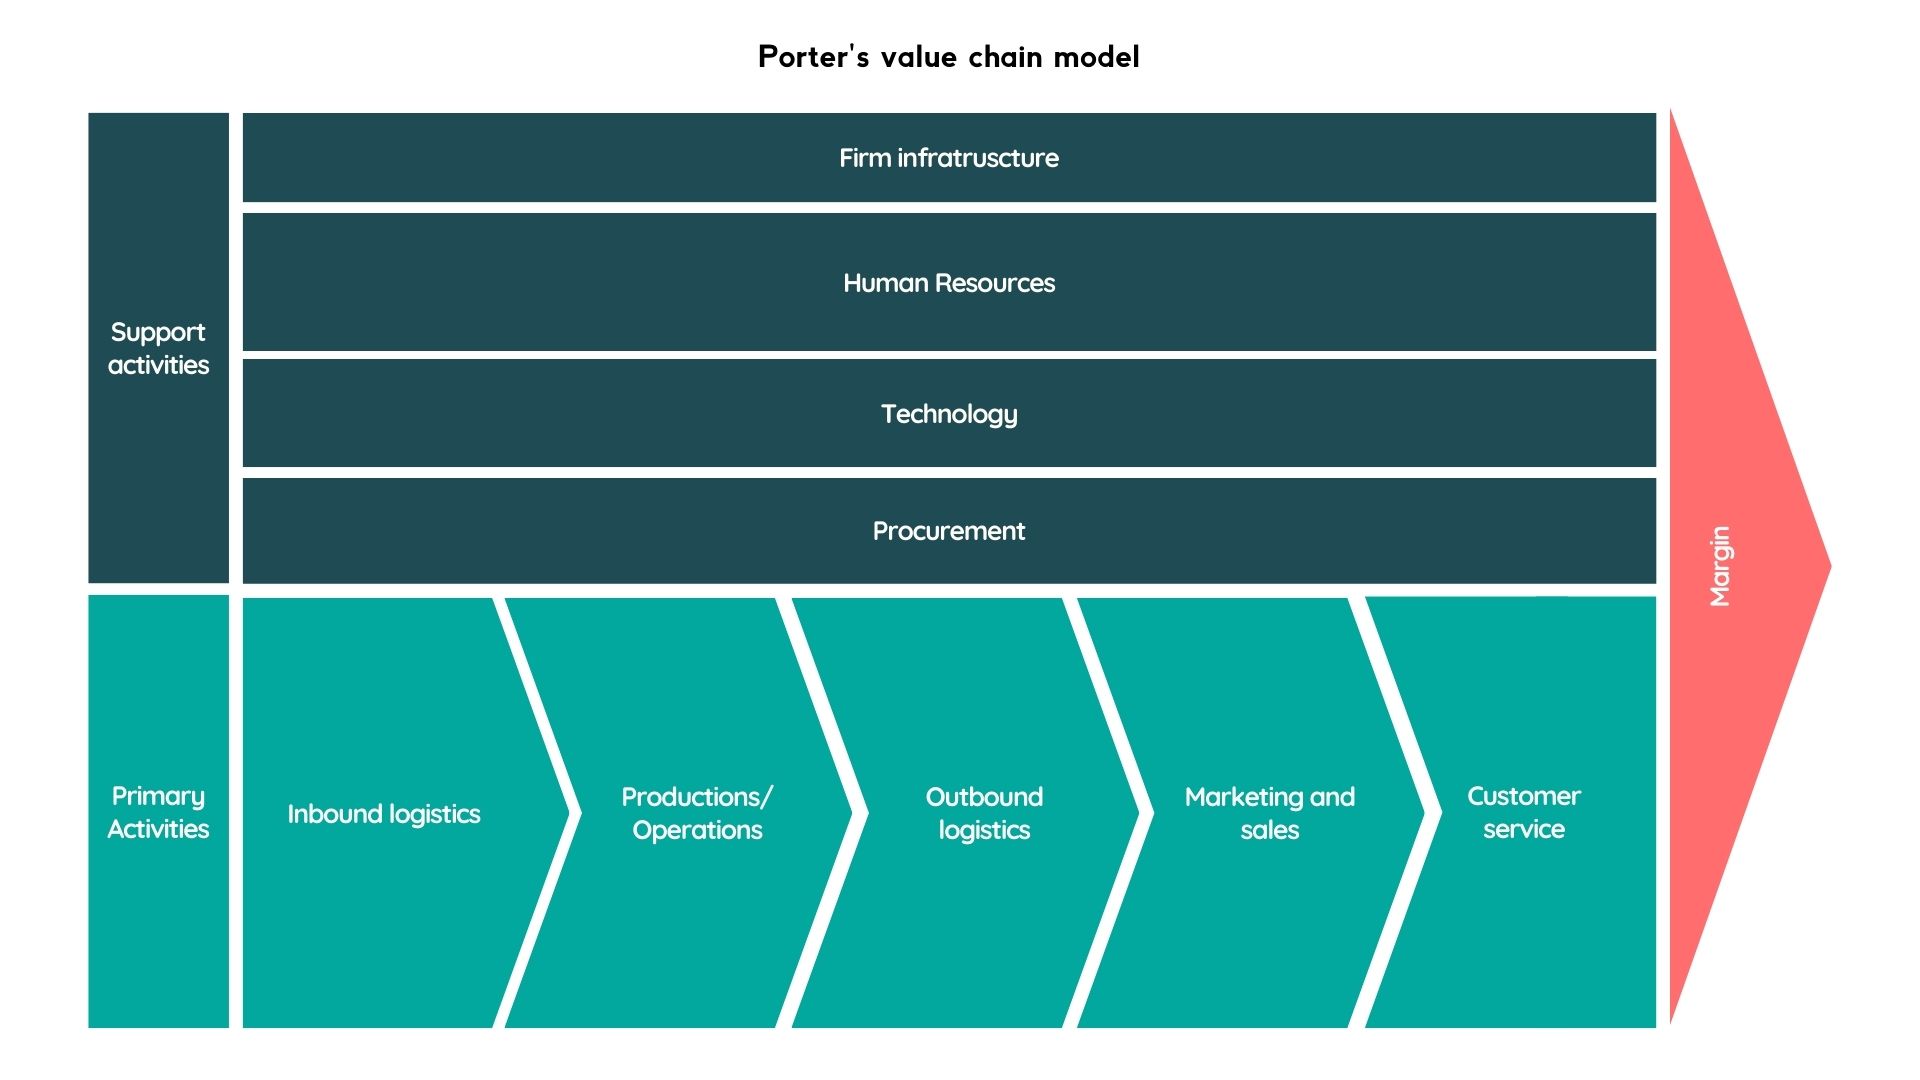 Porter's value chain model